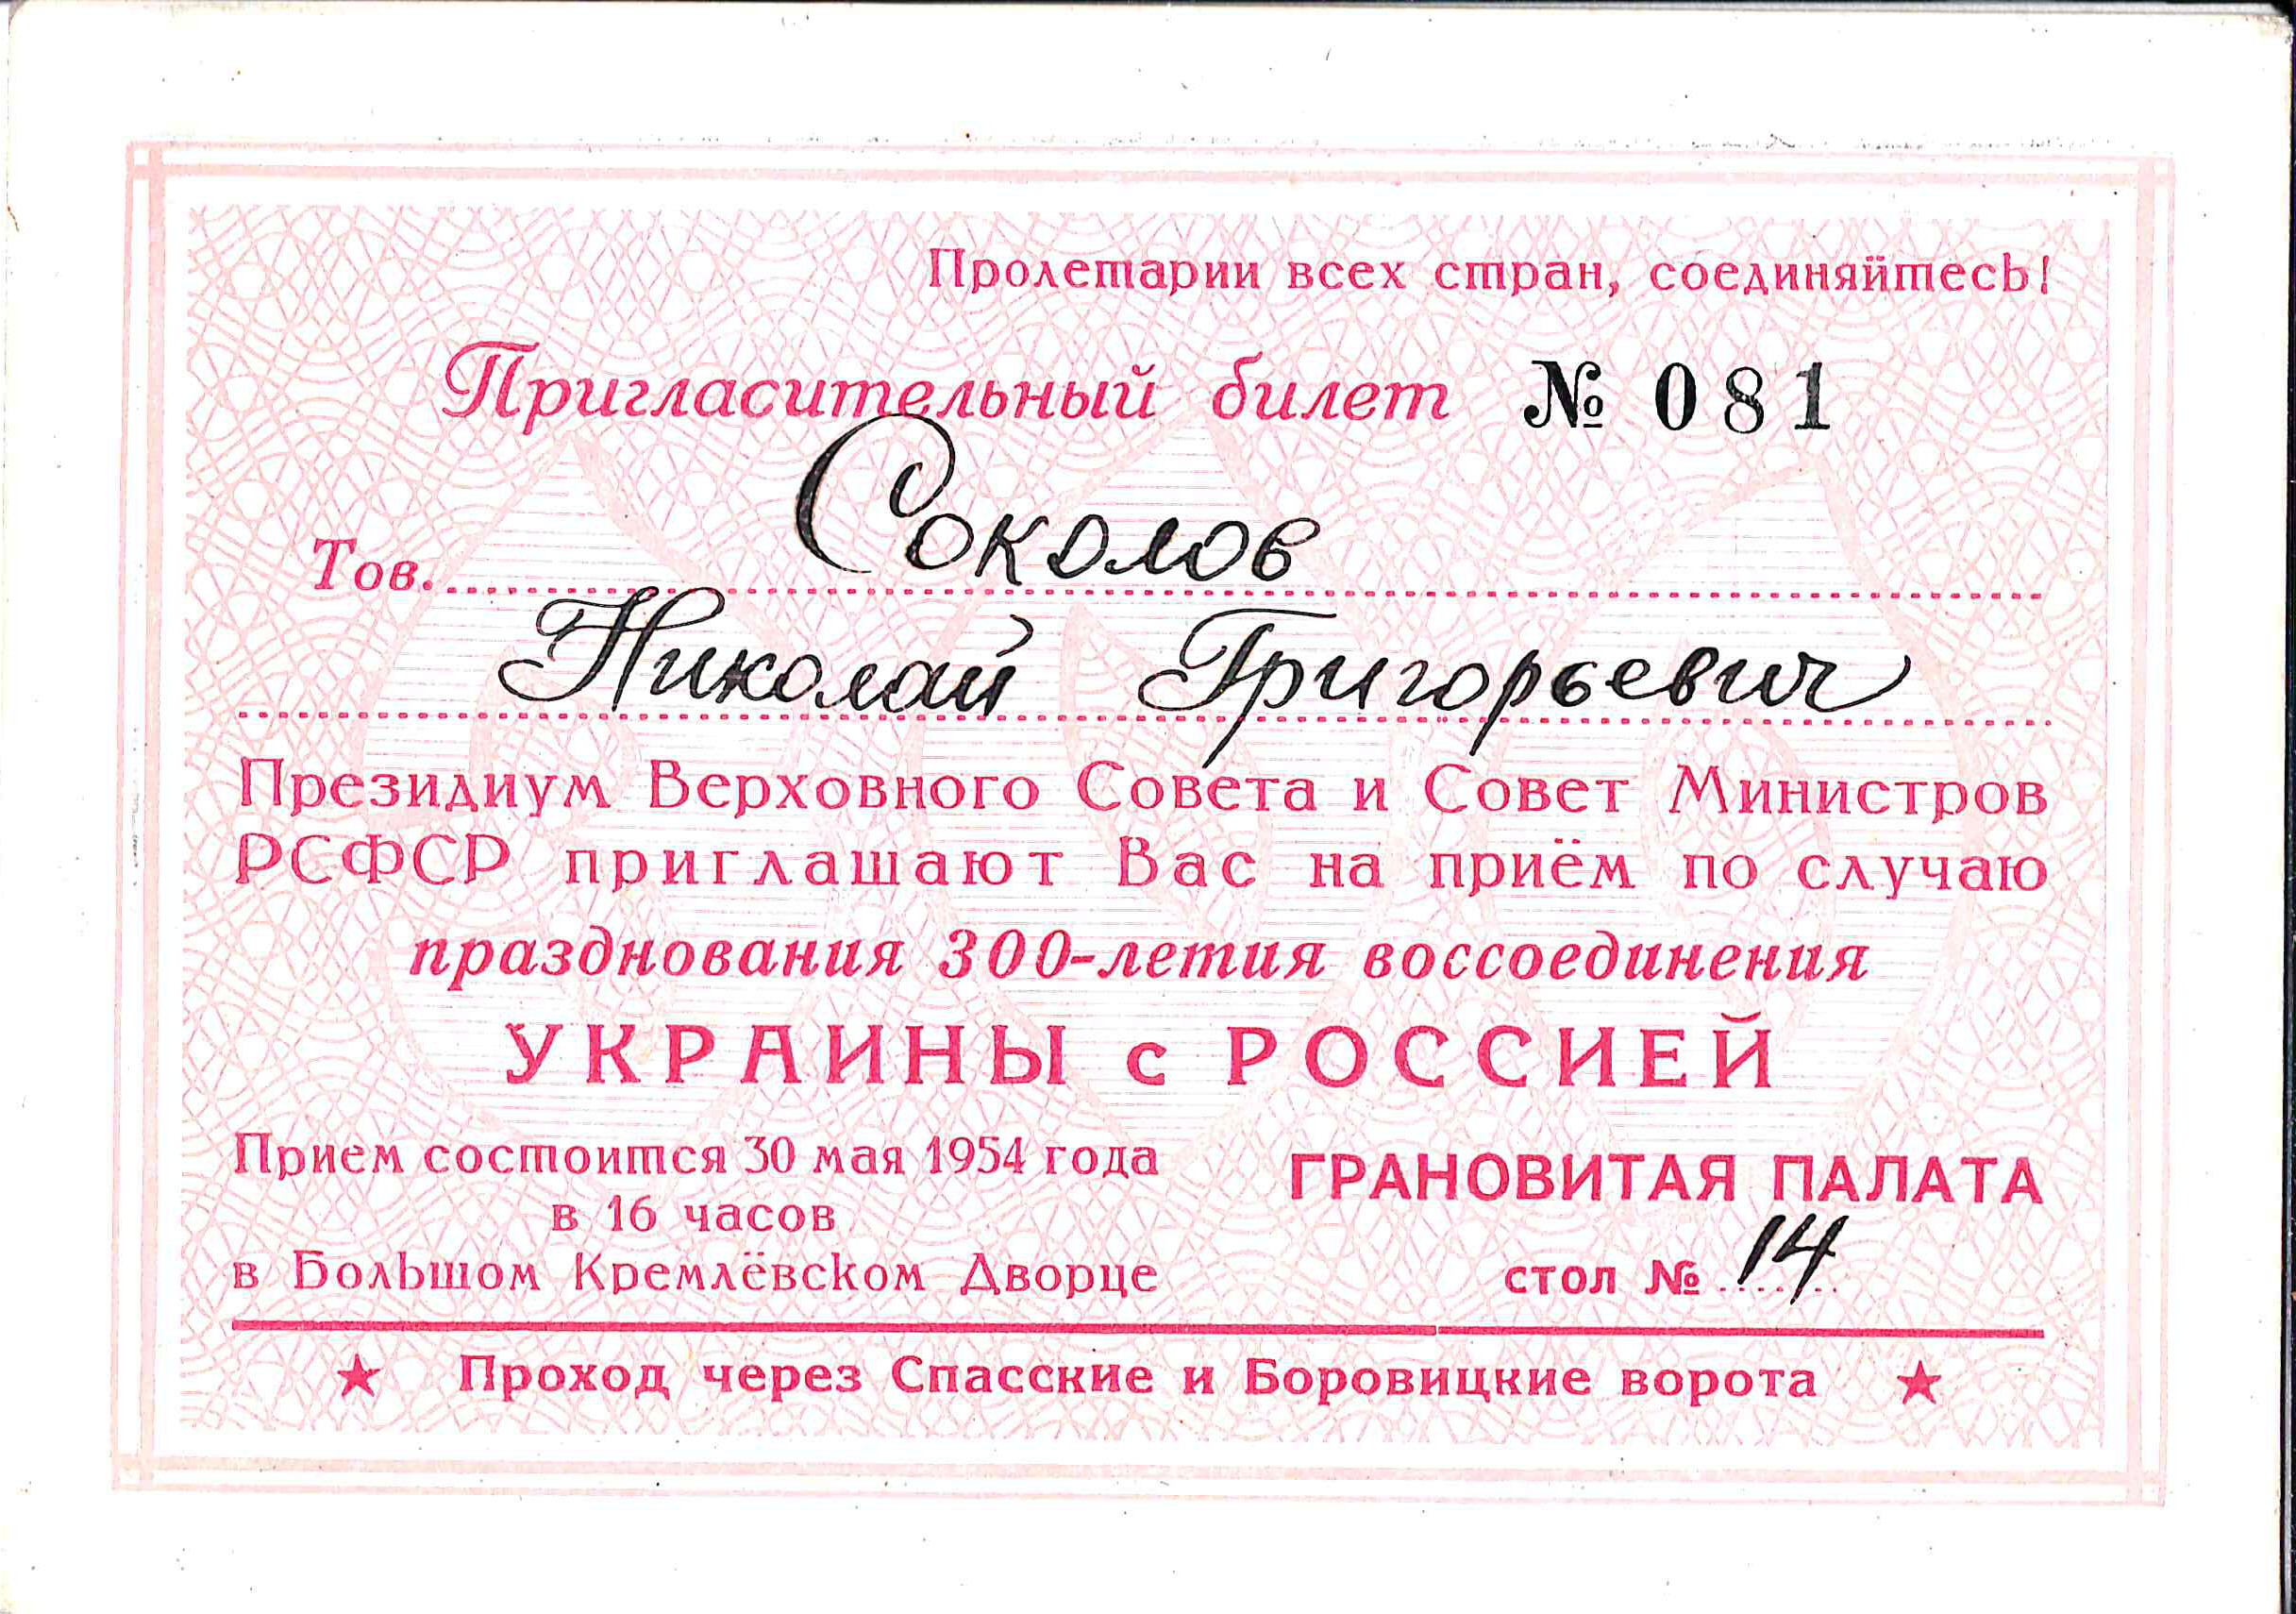 Пригласительный билет Президиума Верховного Совета и Совета Министров РСФСР на приём по случаю празднования 300-летия воссоединения Украины с Россией 30 мая 1954 года на имя Николая Григорьевича Соколова.